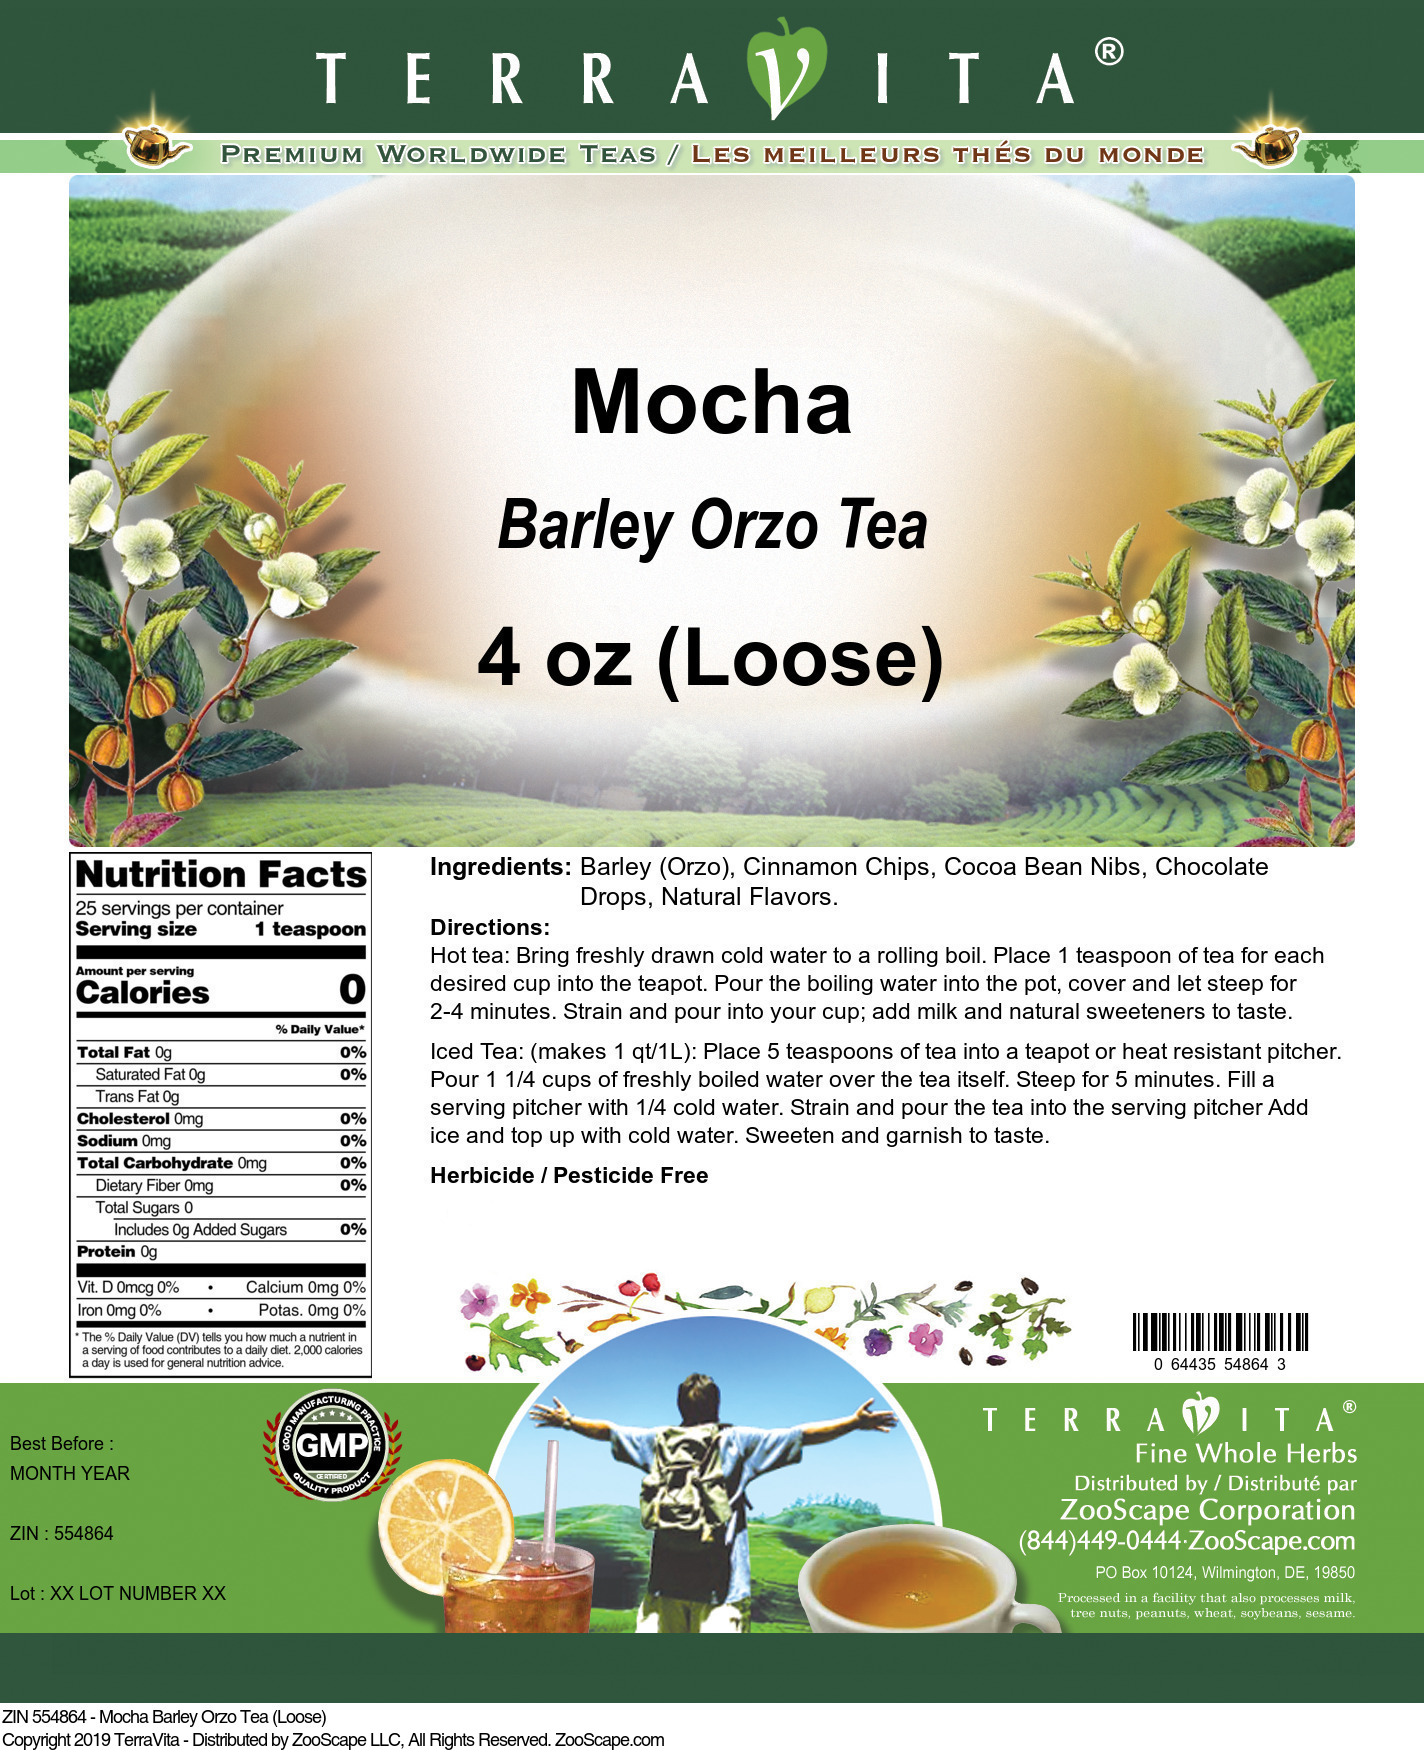 Mocha Barley Orzo Tea (Loose) - Label